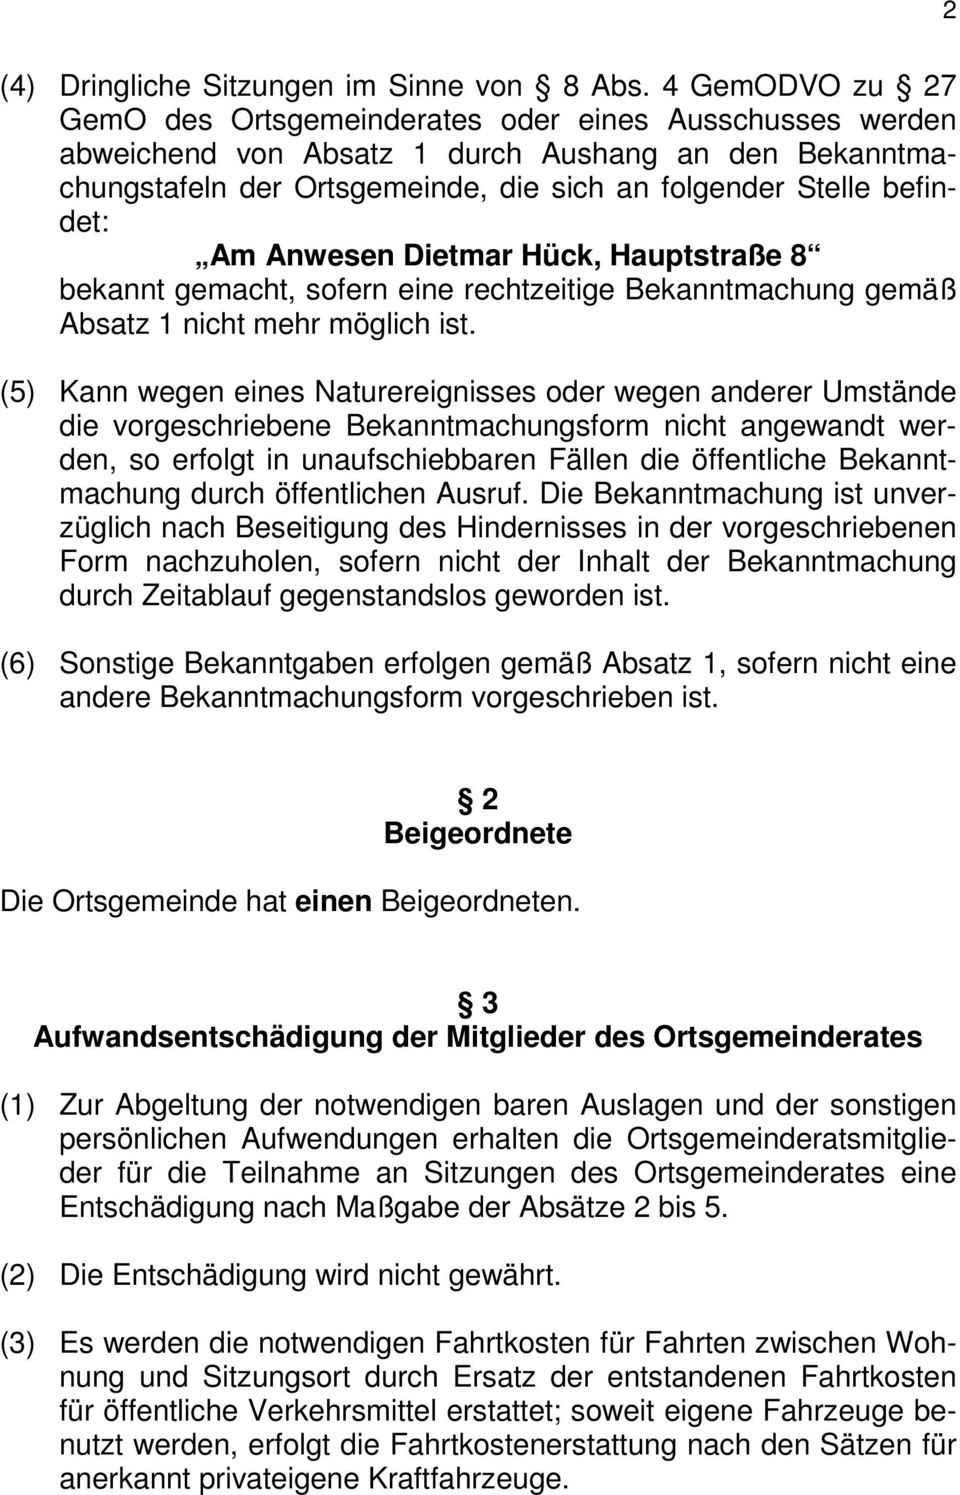 Anwesen Dietmar Hück, Hauptstraße 8 bekannt gemacht, sofern eine rechtzeitige Bekanntmachung gemäß Absatz 1 nicht mehr möglich ist.